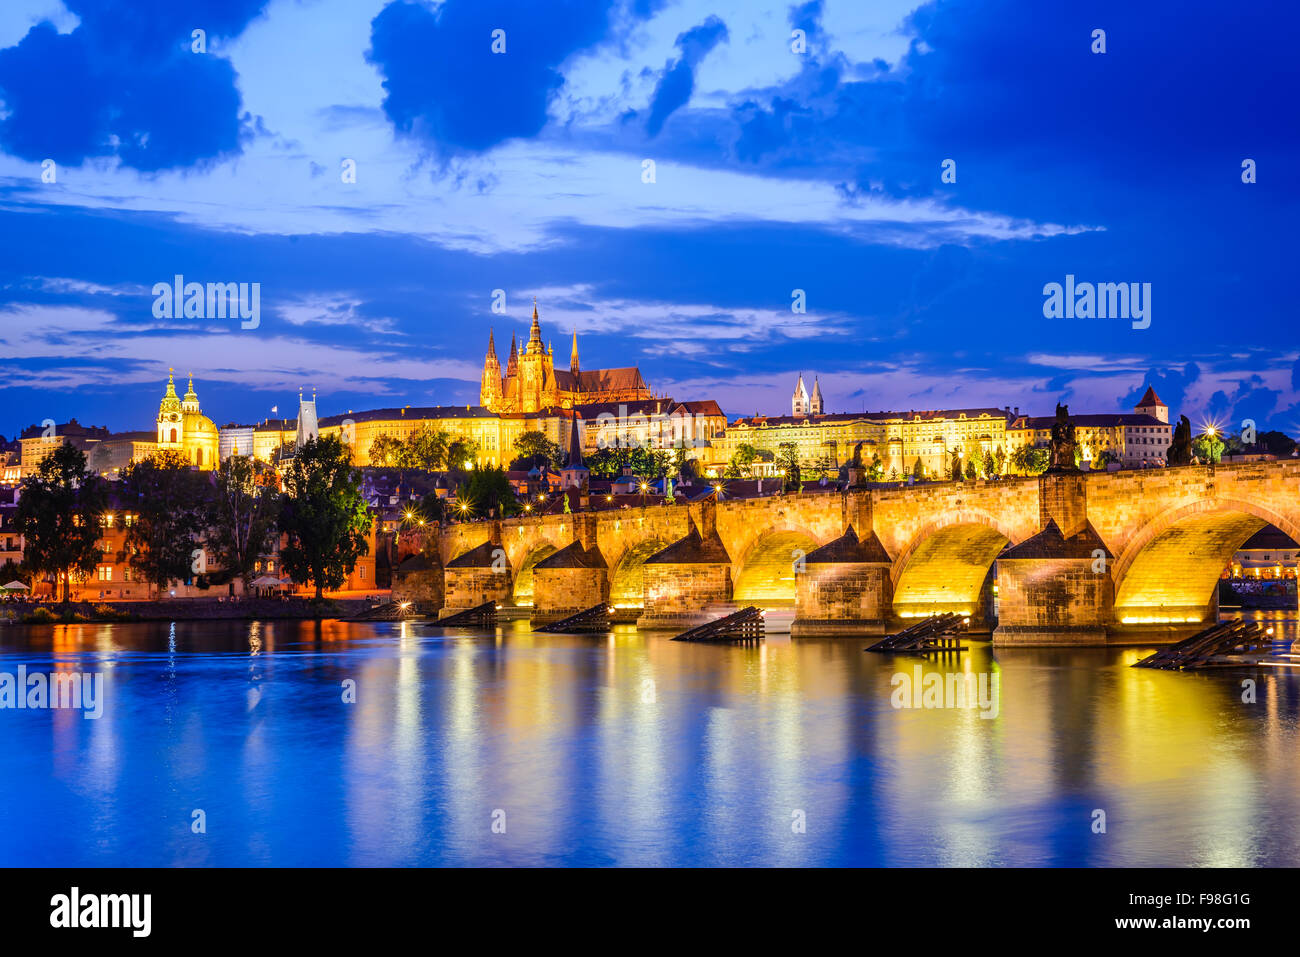 Praga, República Checa. Charles Bridge y Hradcany (Castillo de Praga) con la Catedral de San Vito y San Jorge iglesia tarde al anochecer, Foto de stock